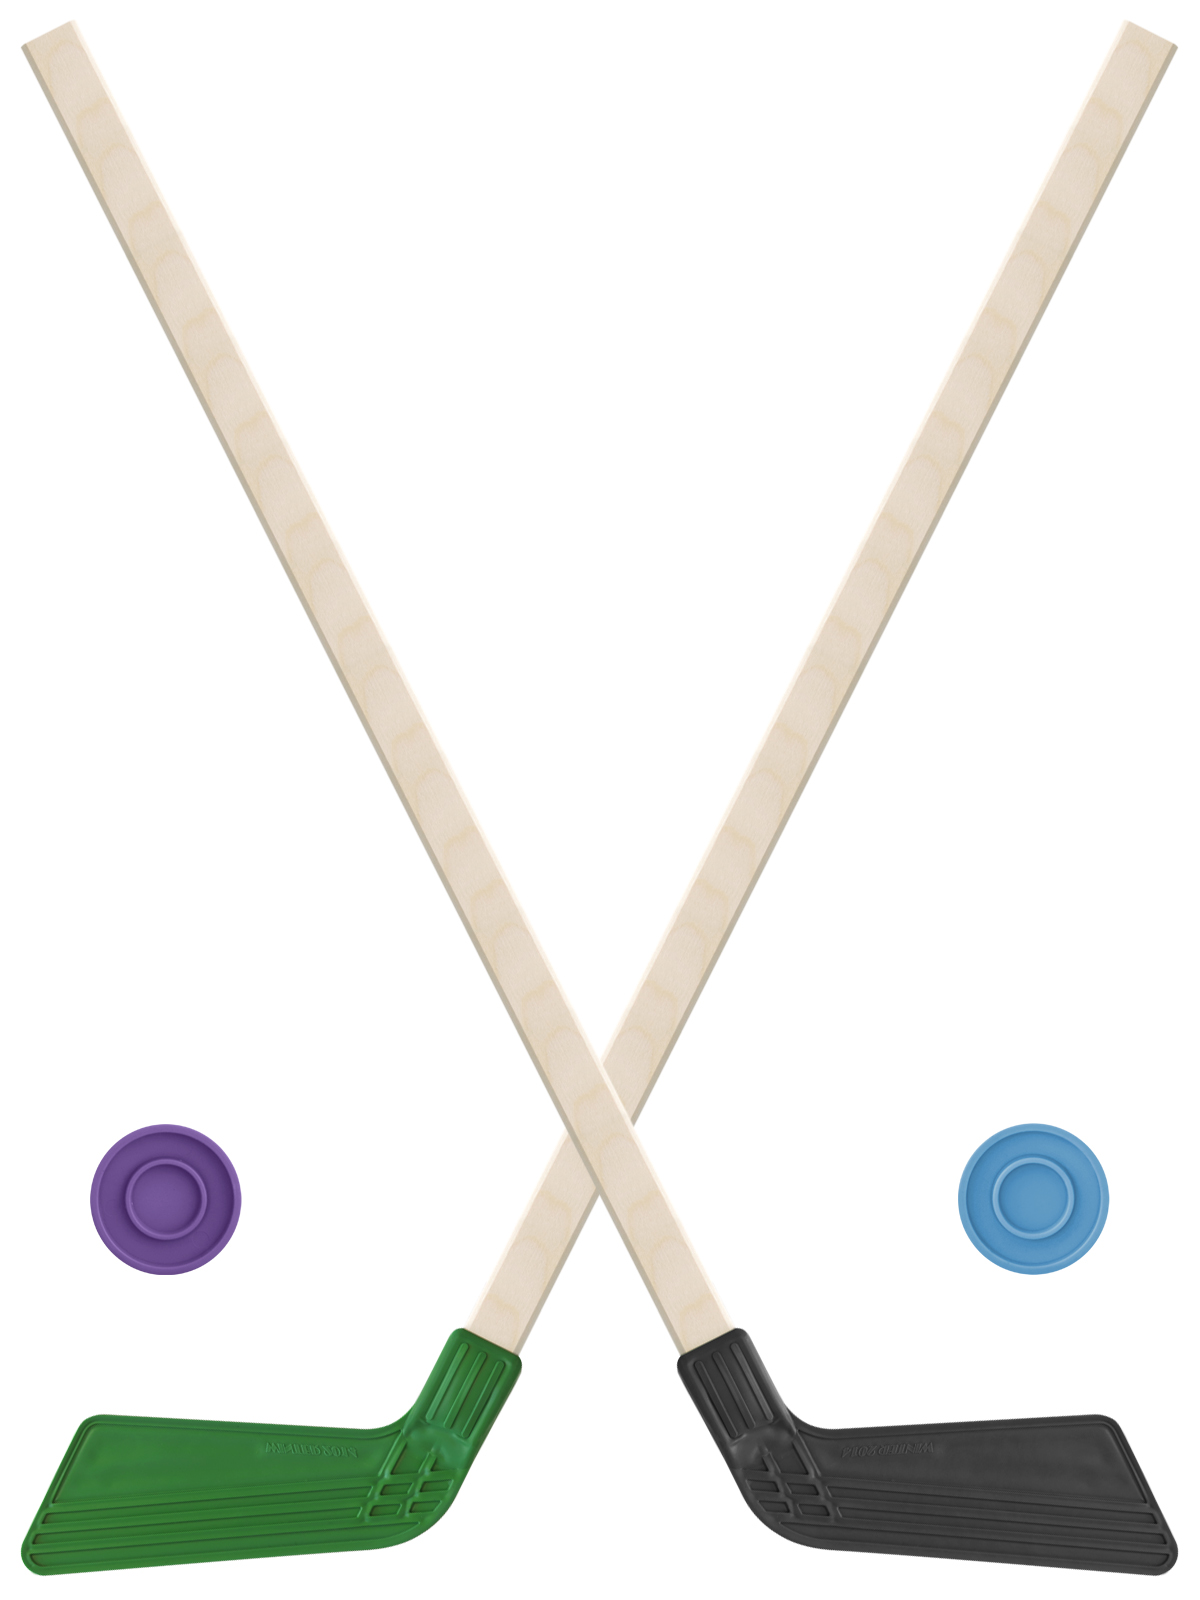 Детский хоккейный набор Задира-плюс клюшка хоккейная детская 80см (зел и черн) 2шт +2шайбы клюшка для хоккея с мячoм rgx energy 1 black